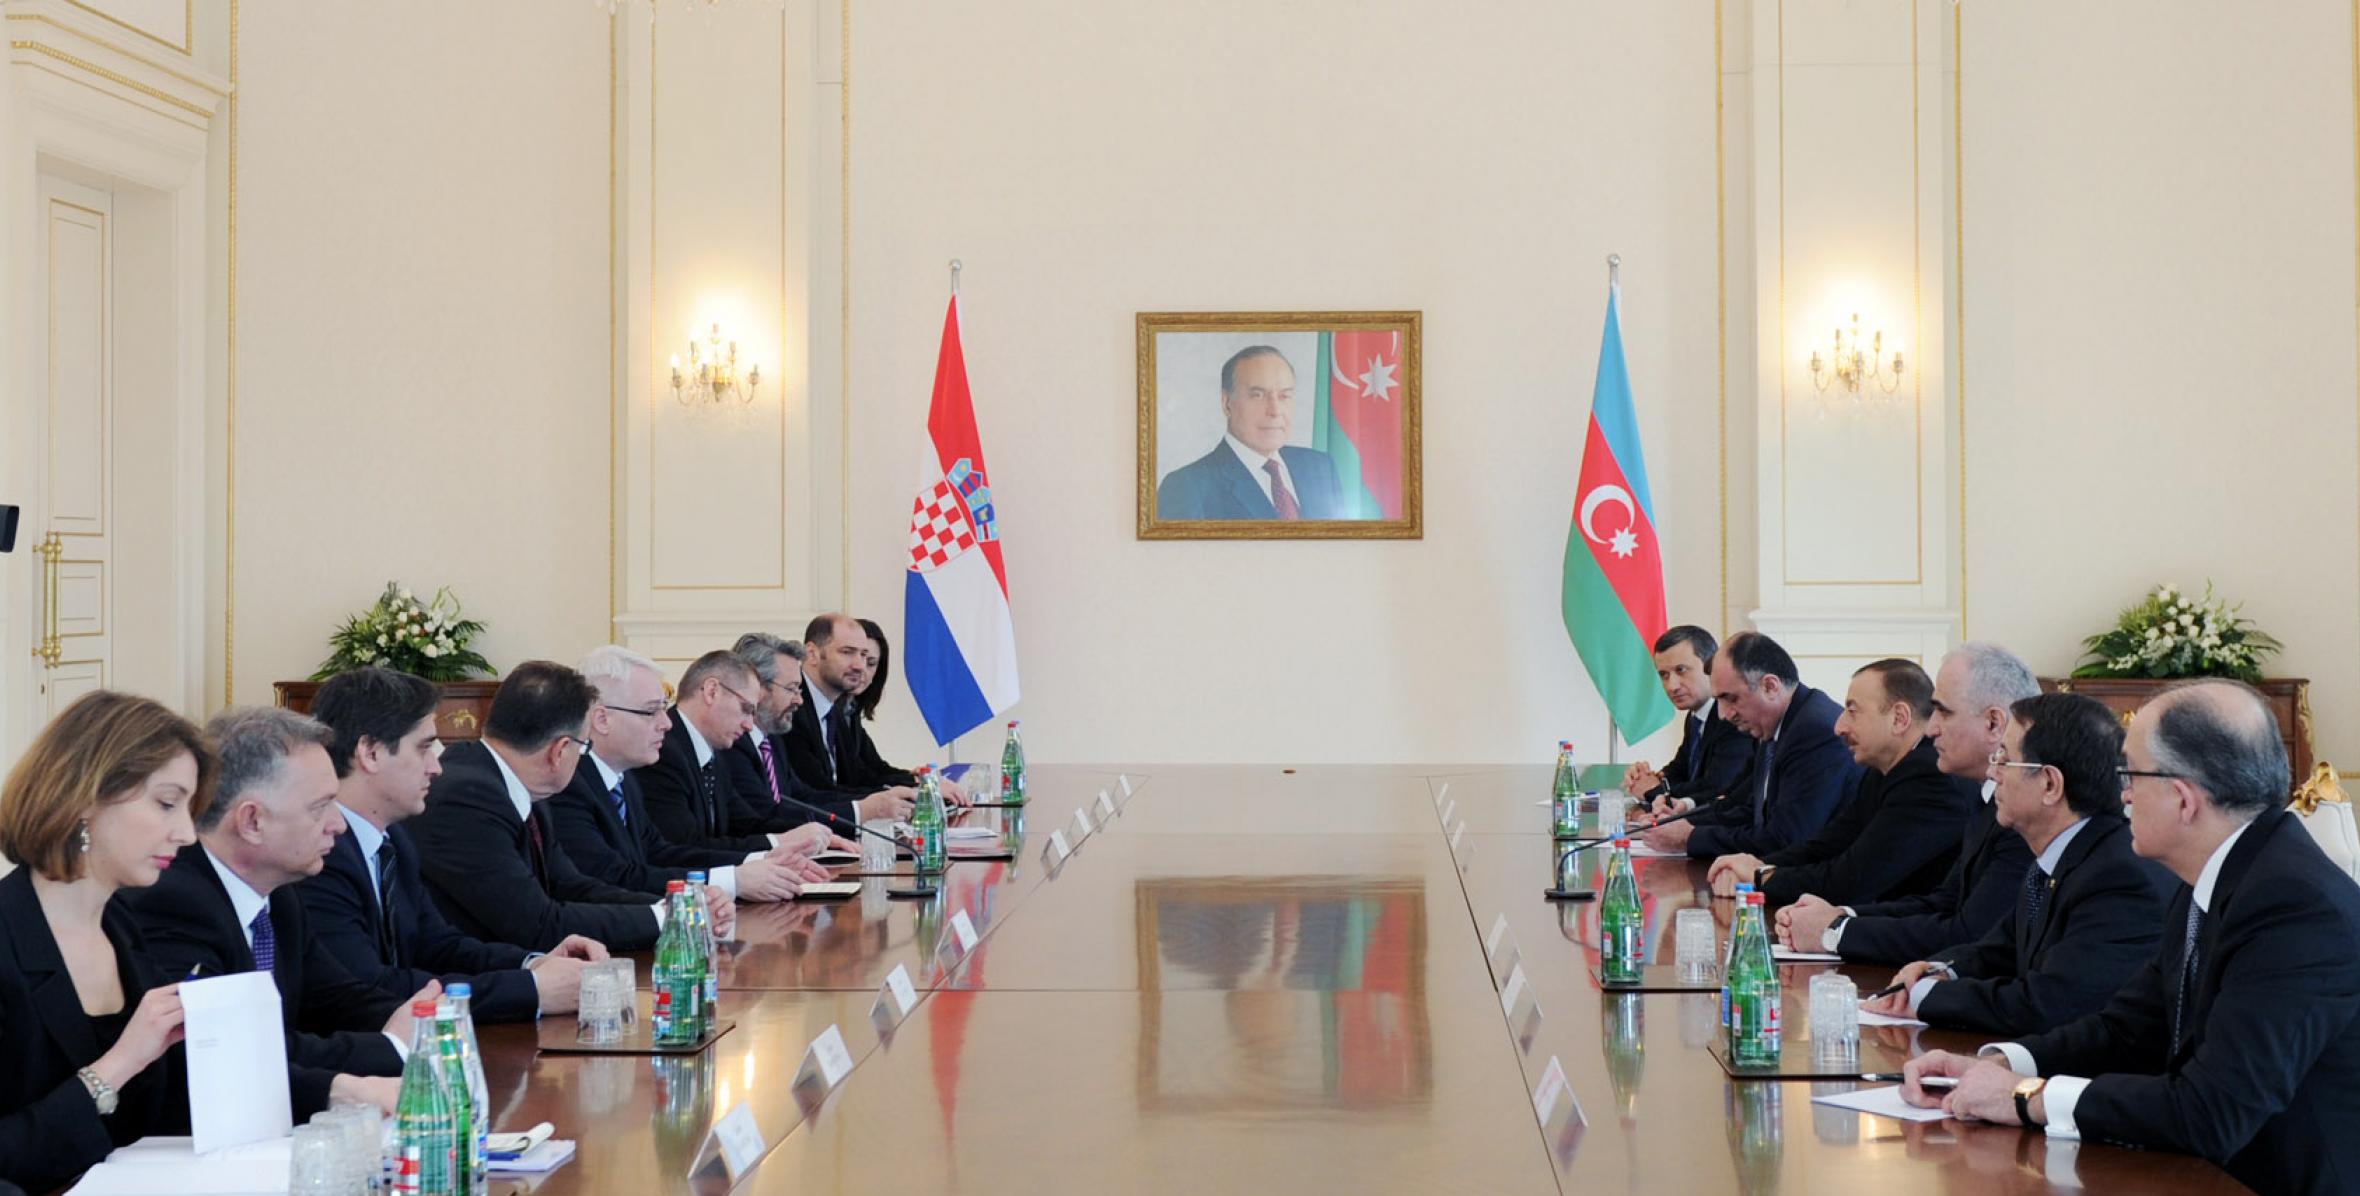 Состоялась встреча Ильхама Алиева и Президента Республики Хорватия Иво Йосиповича в расширенном составе